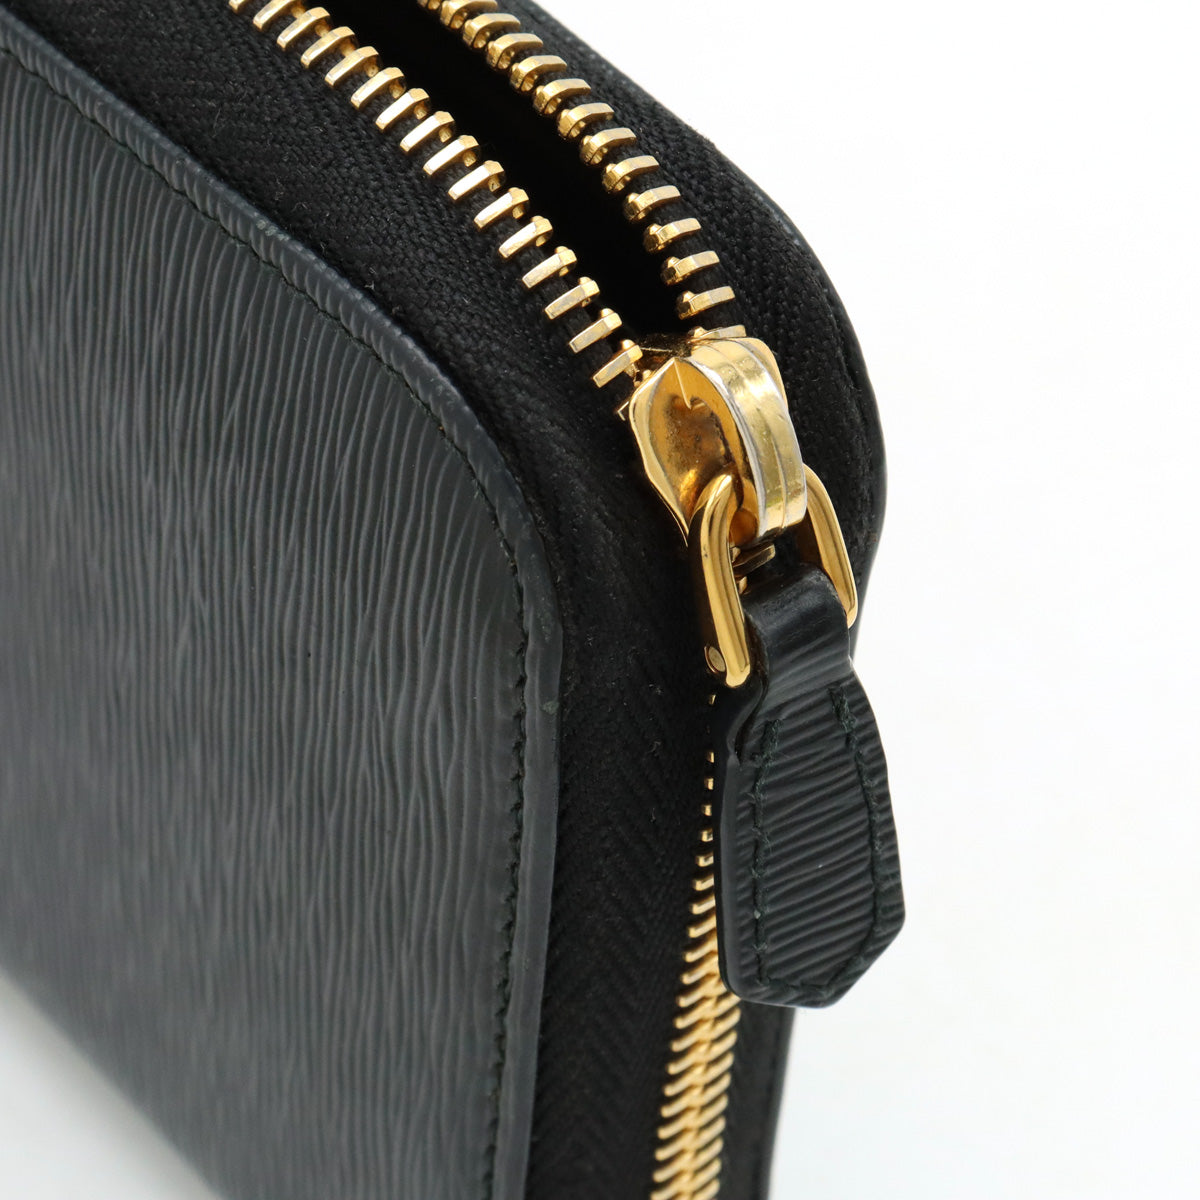 PRADA PRADA VITELLO MOVE Round  Long Wallet Leather NERO Black Black Gold  1ML506